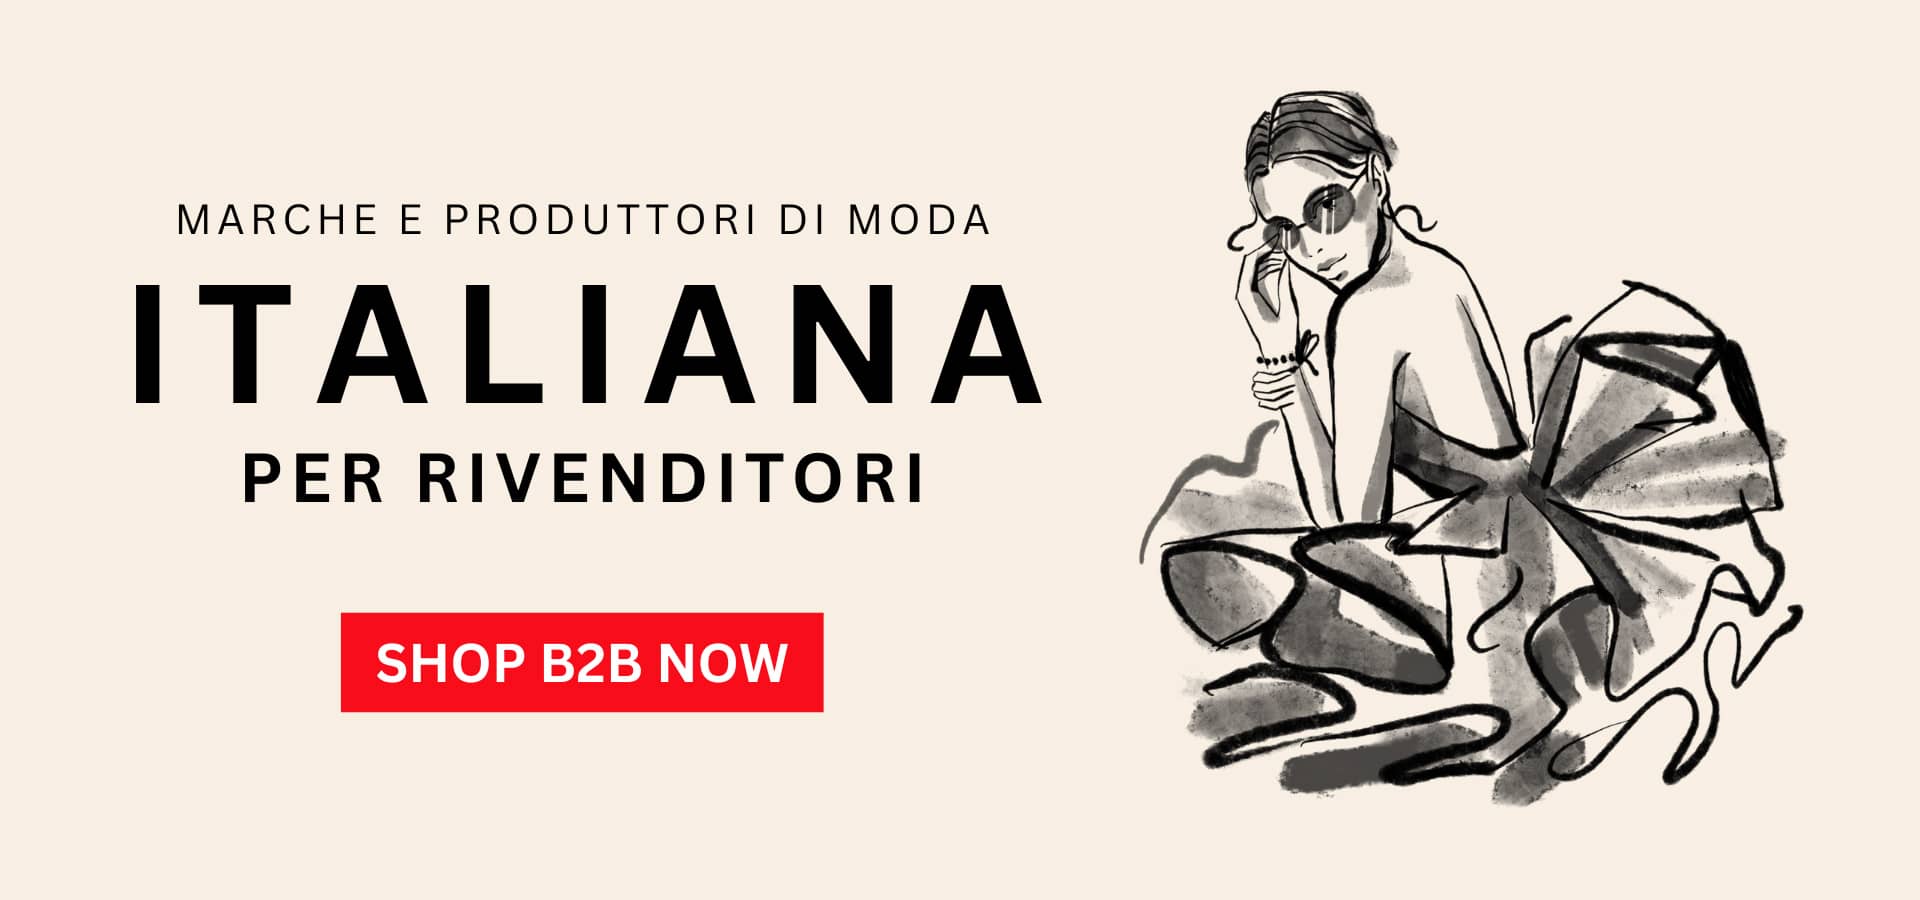 Piattaforma B2B dei produttori italiani della moda per vendere a buyers e distributori esteri - ItalianModa